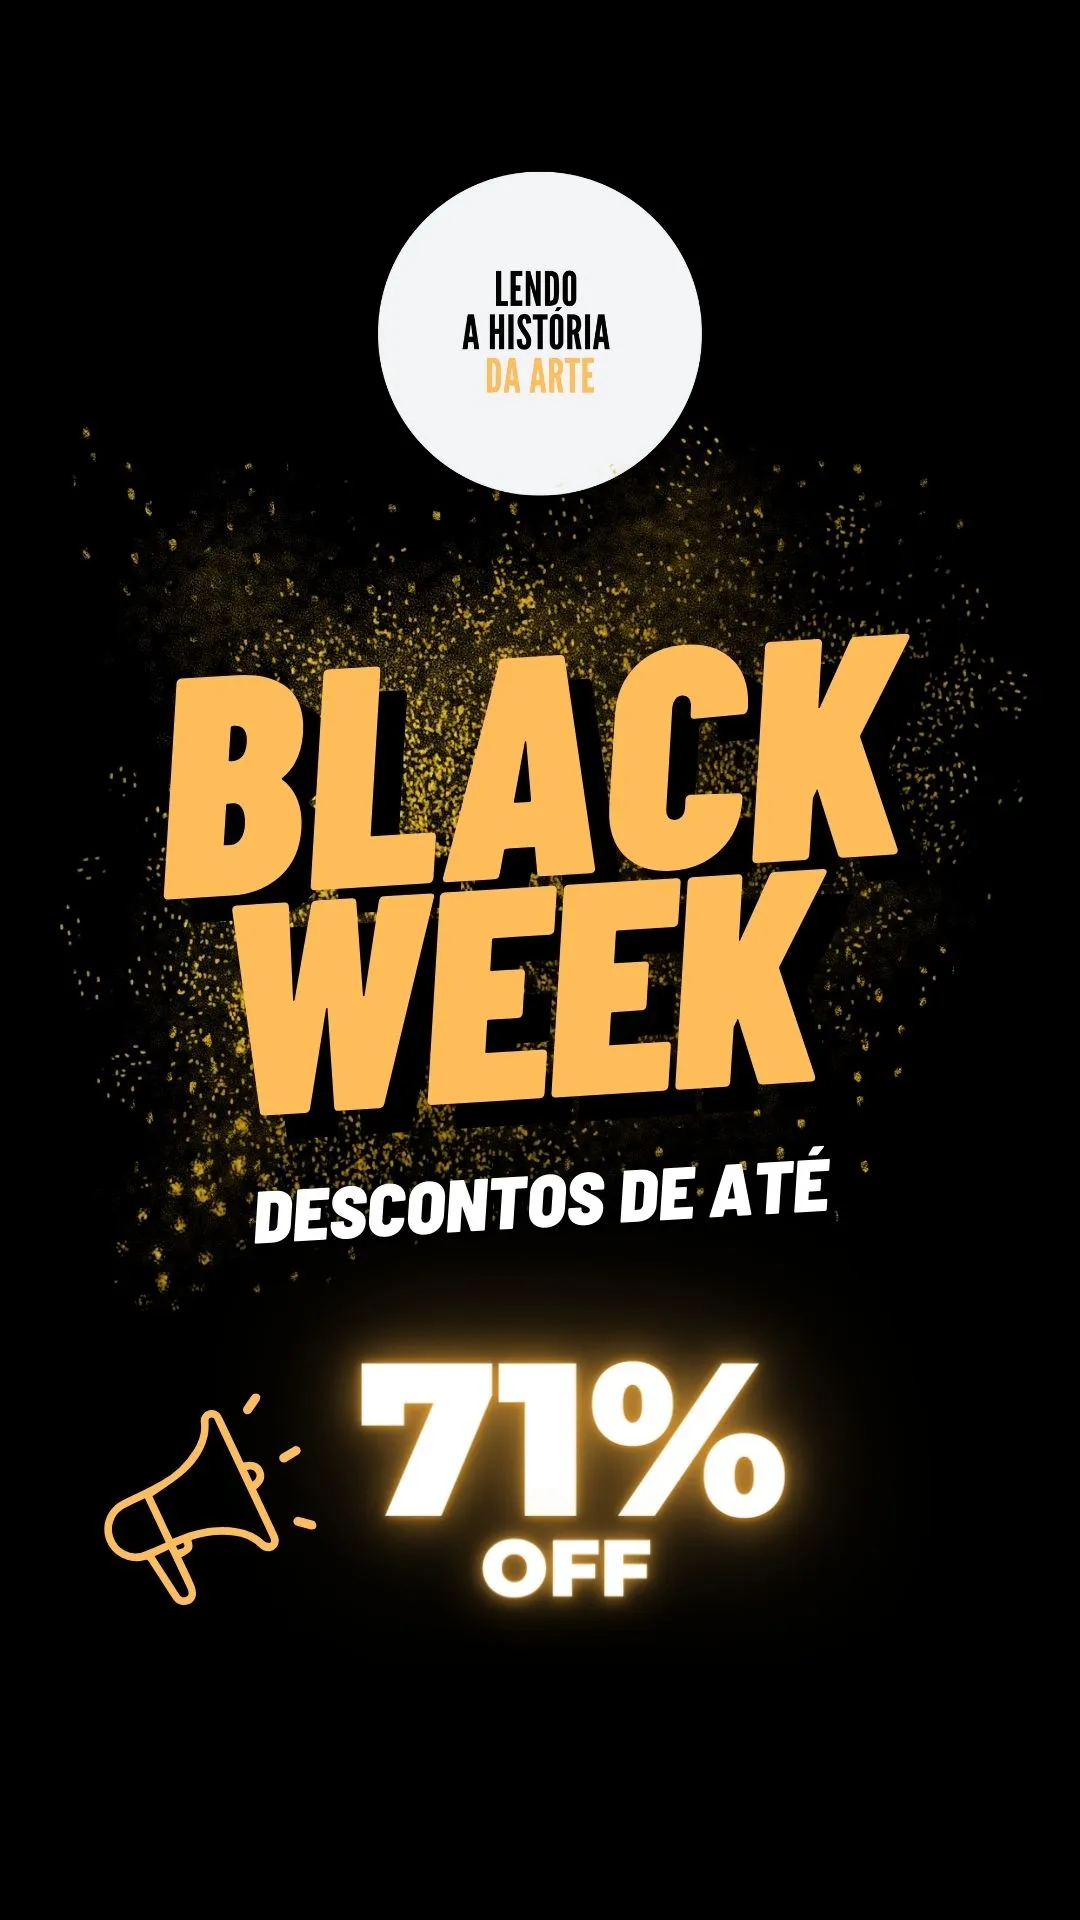 Black Week! Descontos de até 71% em cursos e ebook